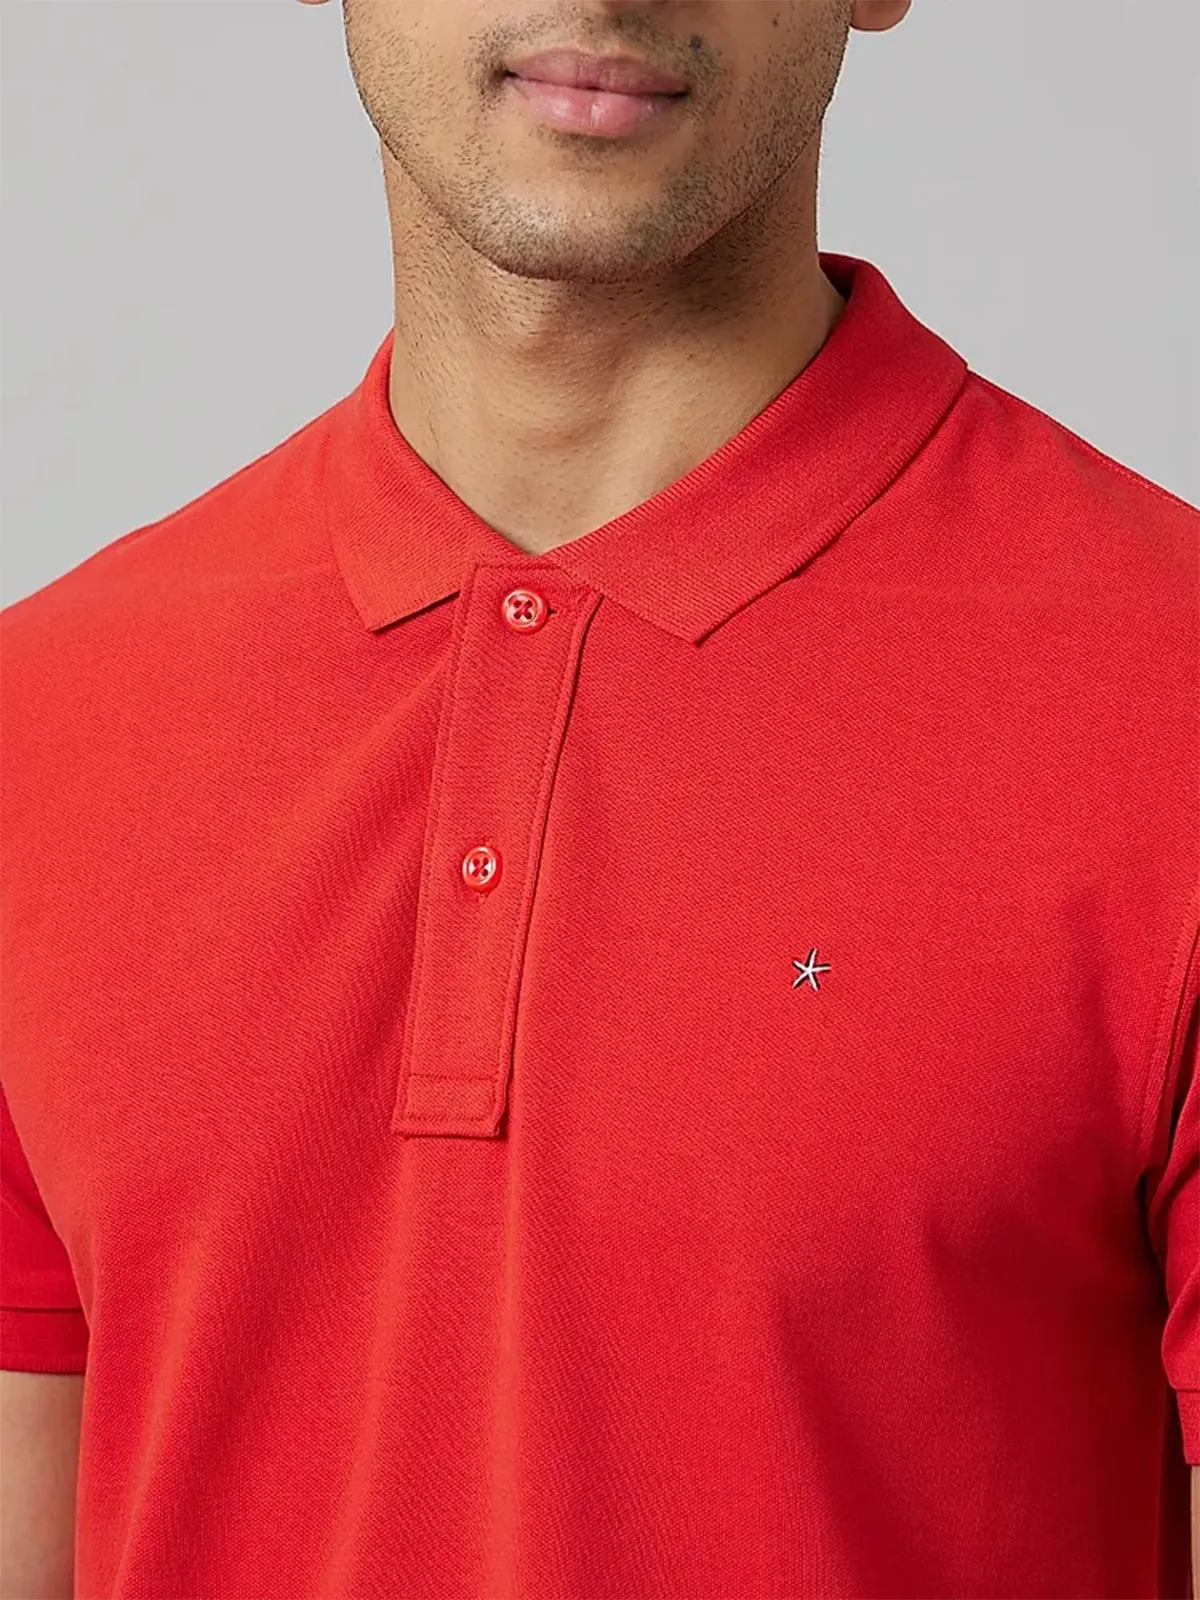 Celio red cotton plain t shirt